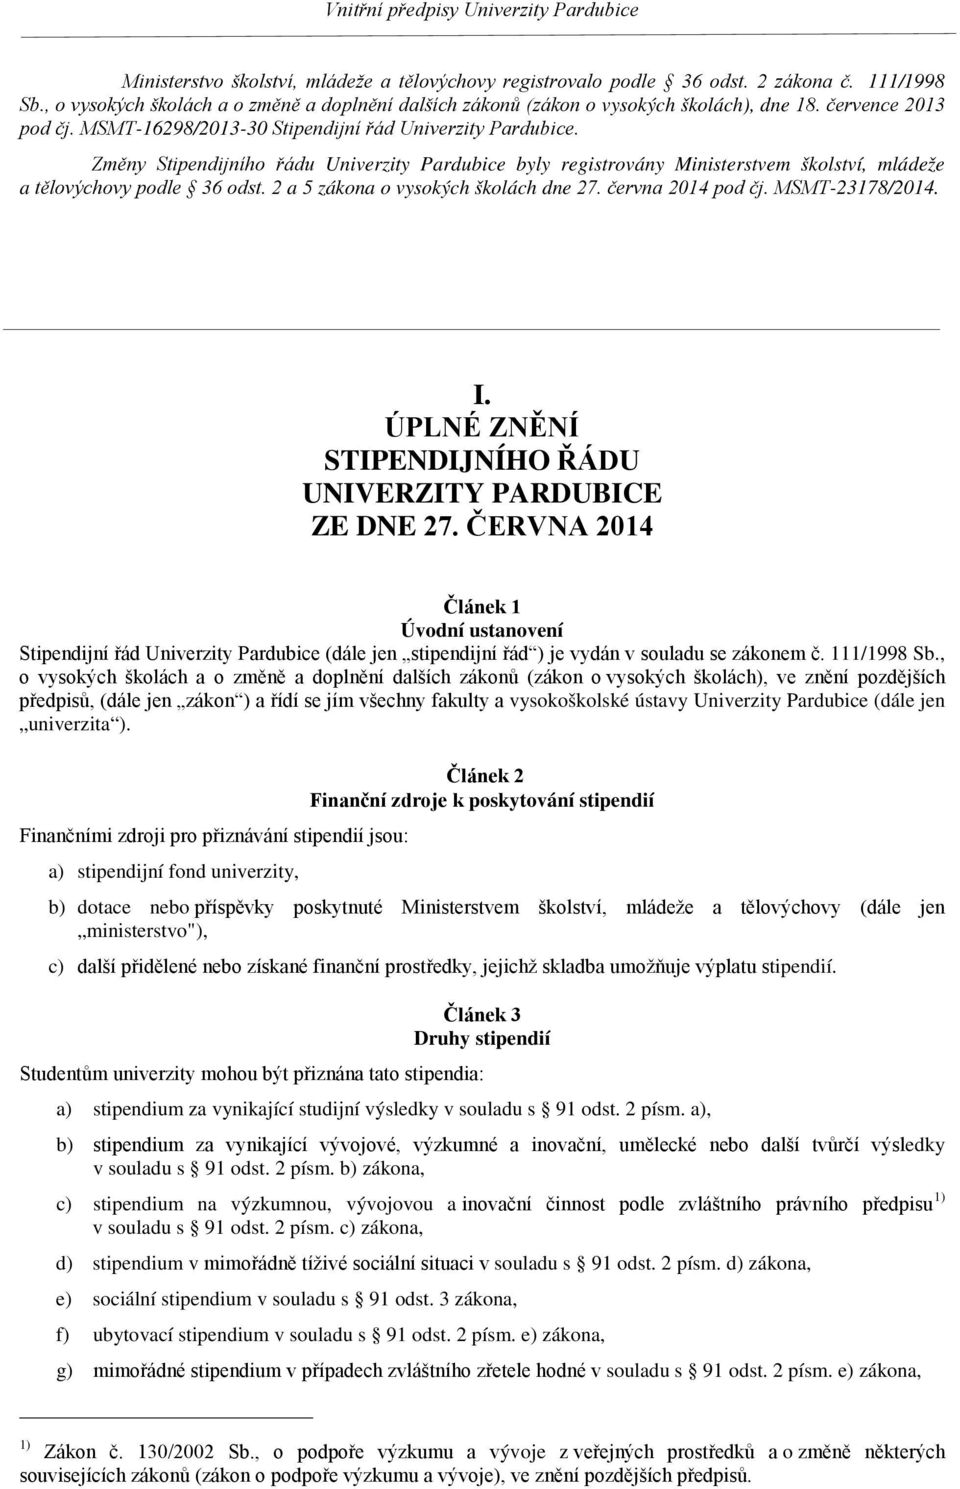 Změny Stipendijního řádu Univerzity Pardubice byly registrovány Ministerstvem školství, mládeže a tělovýchovy podle 36 odst. 2 a 5 zákona o vysokých školách dne 27. června 2014 pod čj.